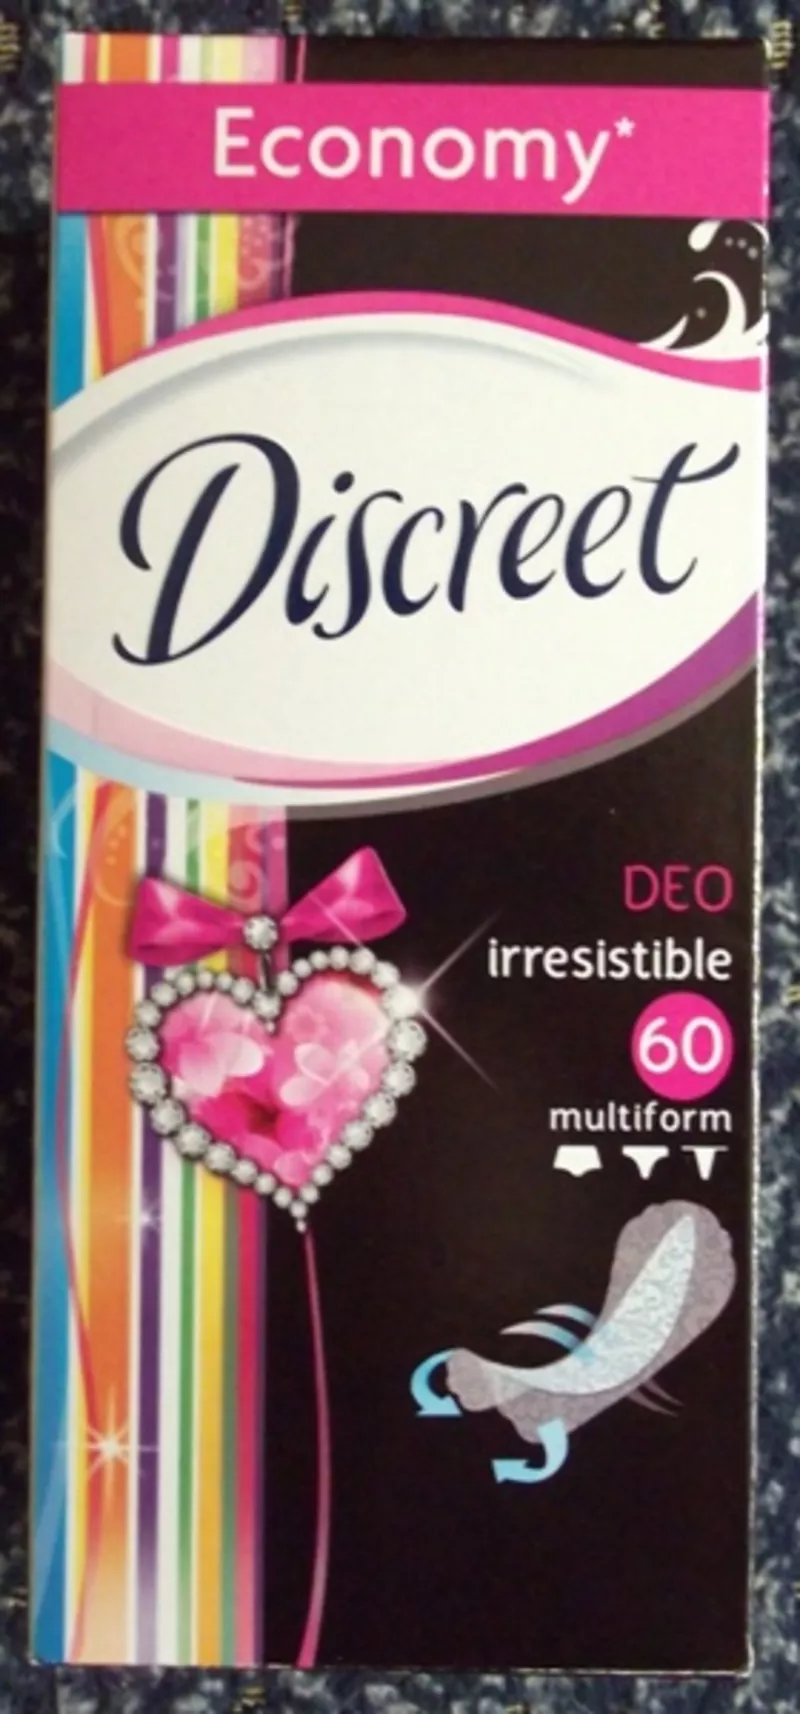 Ежедневная прокладка Discreet 60 шт от 26грн/упак ,  Распродажа  2